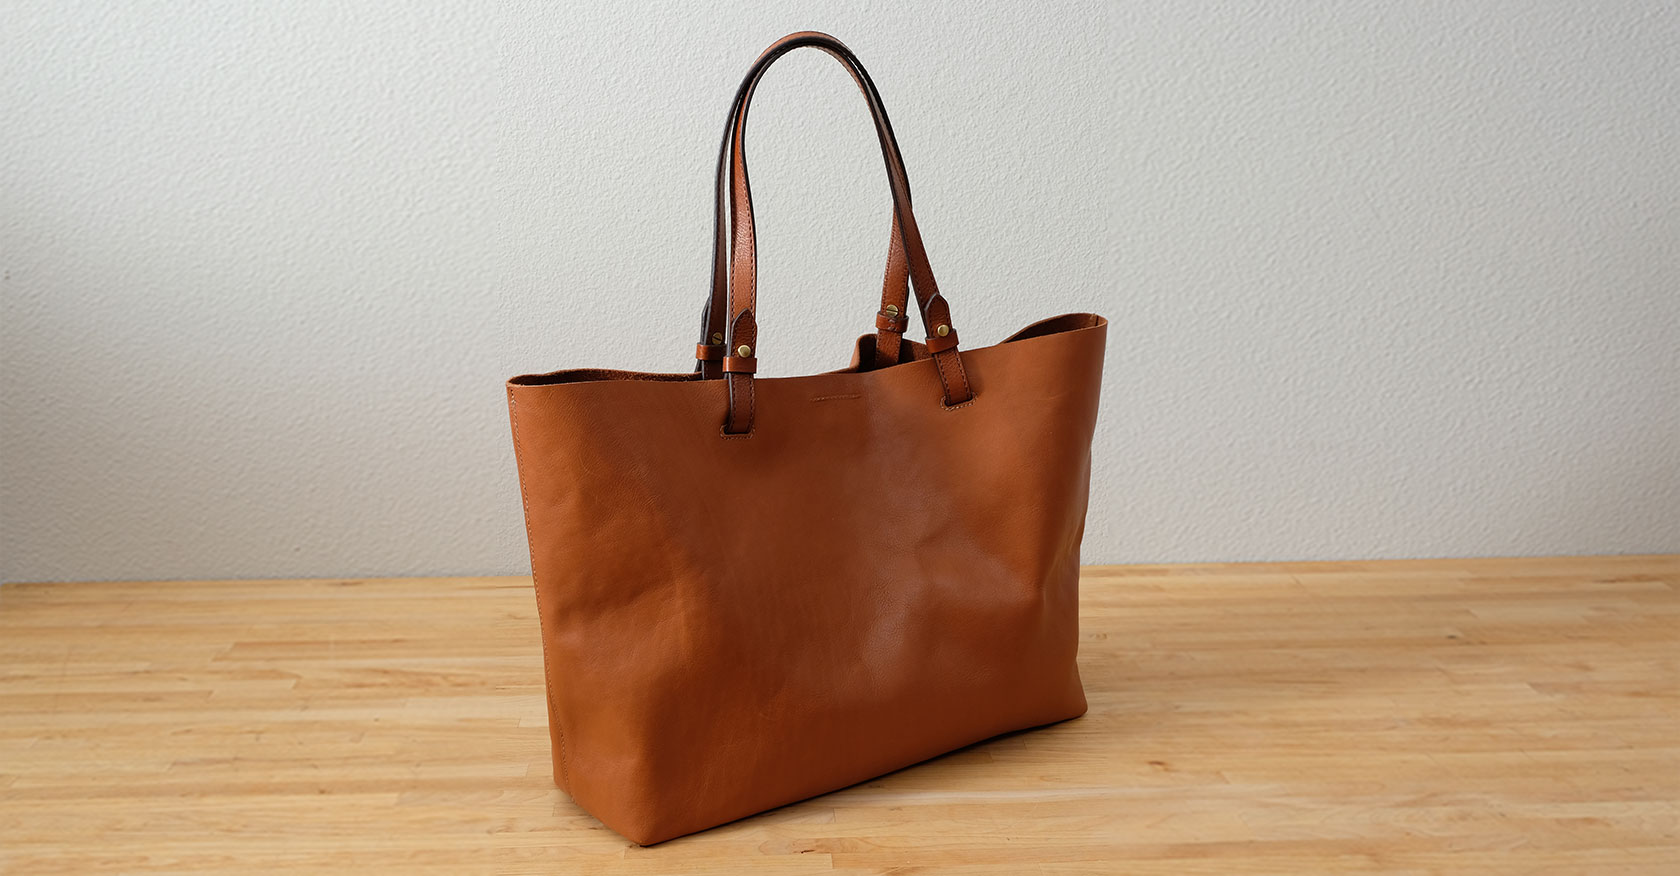 Handbag Design — Katherine Olvera - UX Portfolio